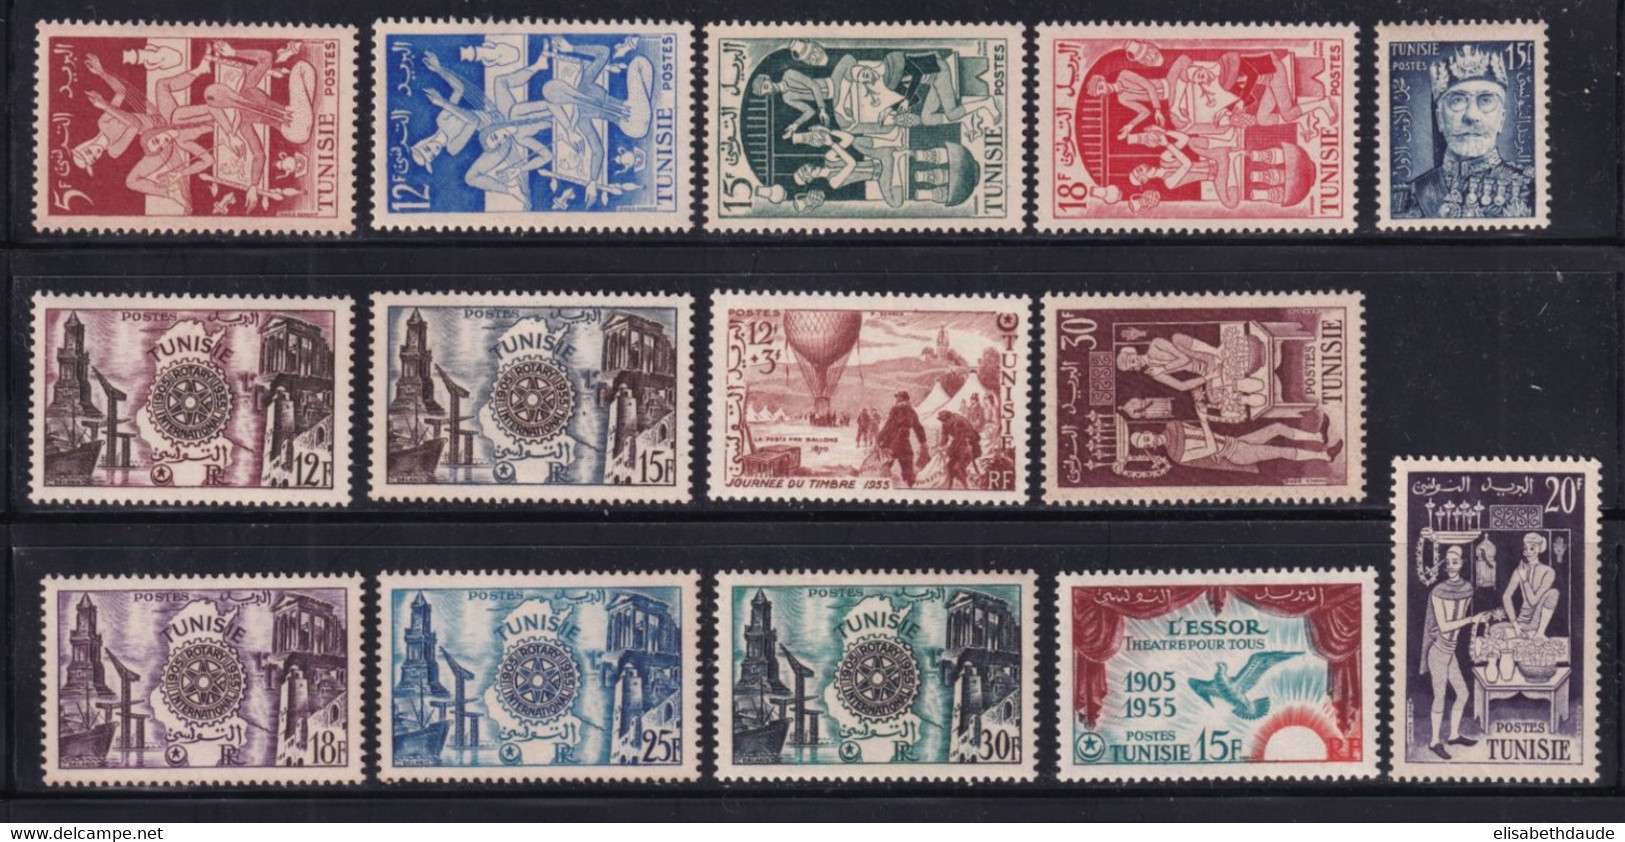 TUNISIE - 1955 - ANNEE COMPLETE - YVERT N° 388/401 ** MNH - COTE 2022 = 27.25 EUR. - Ungebraucht